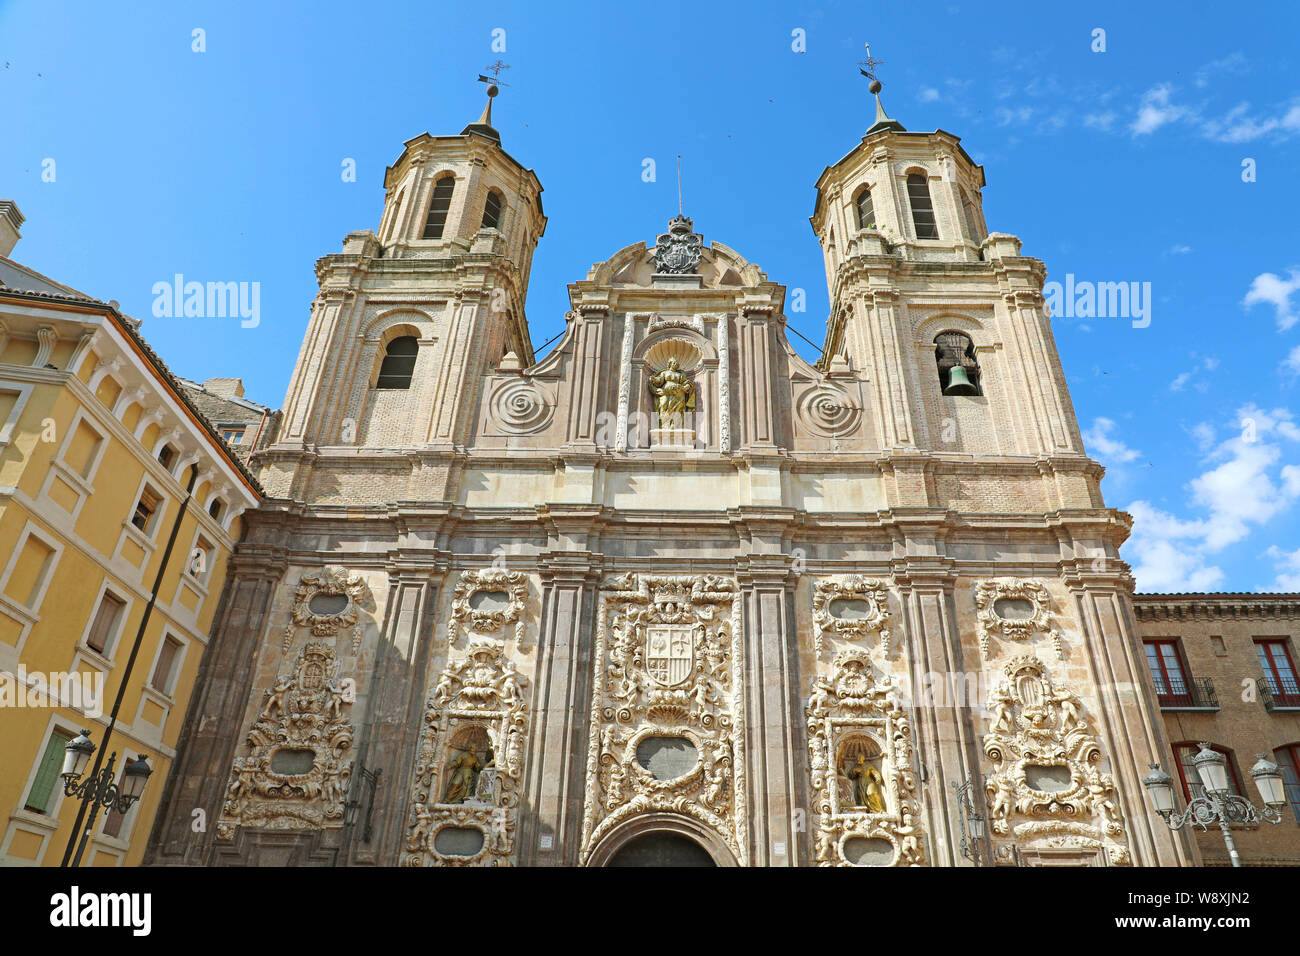 Church of Santa Isabel de Portugal, Zaragoza, Spain Stock Photo - Alamy